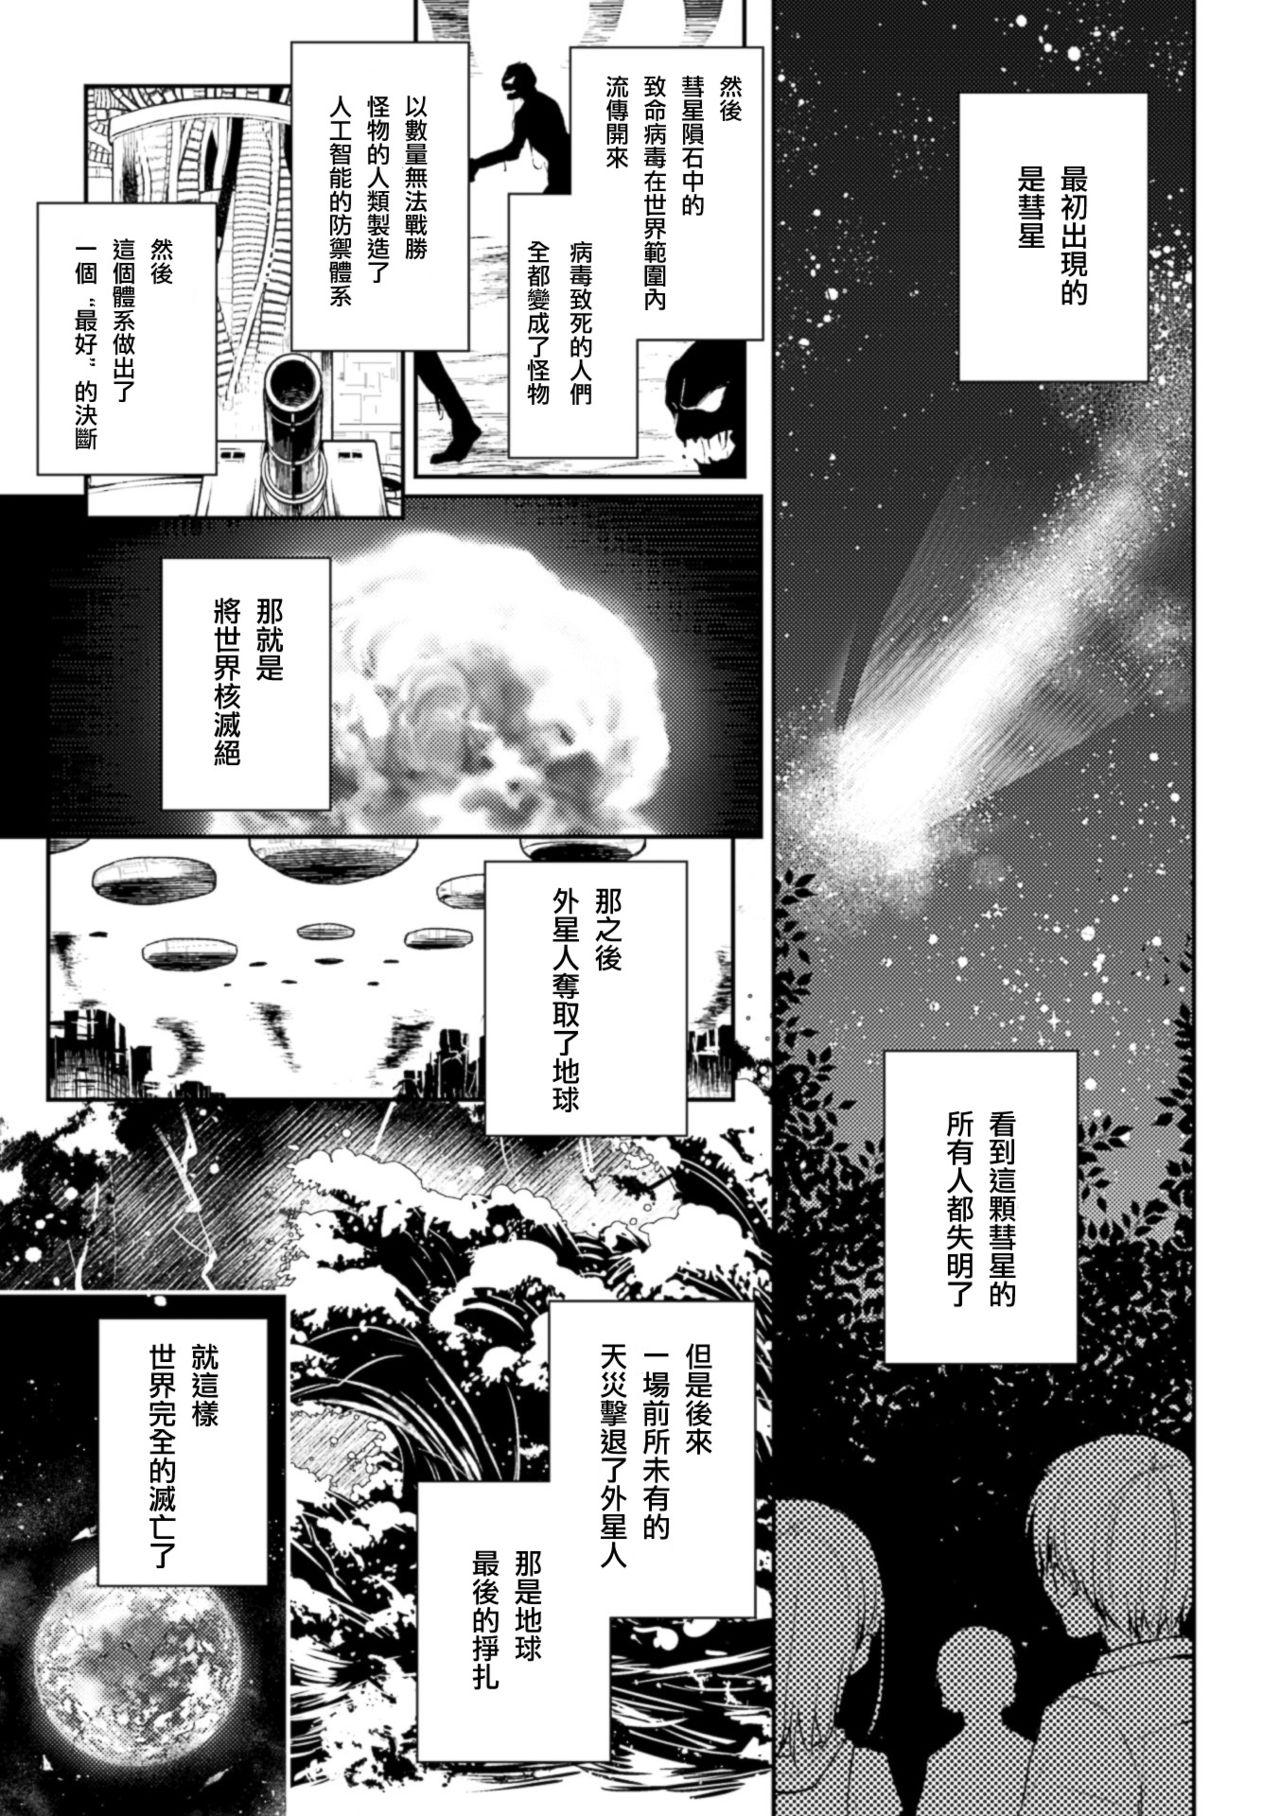 2D Comic Magazine Yuri Ninshin Vol. 3 28